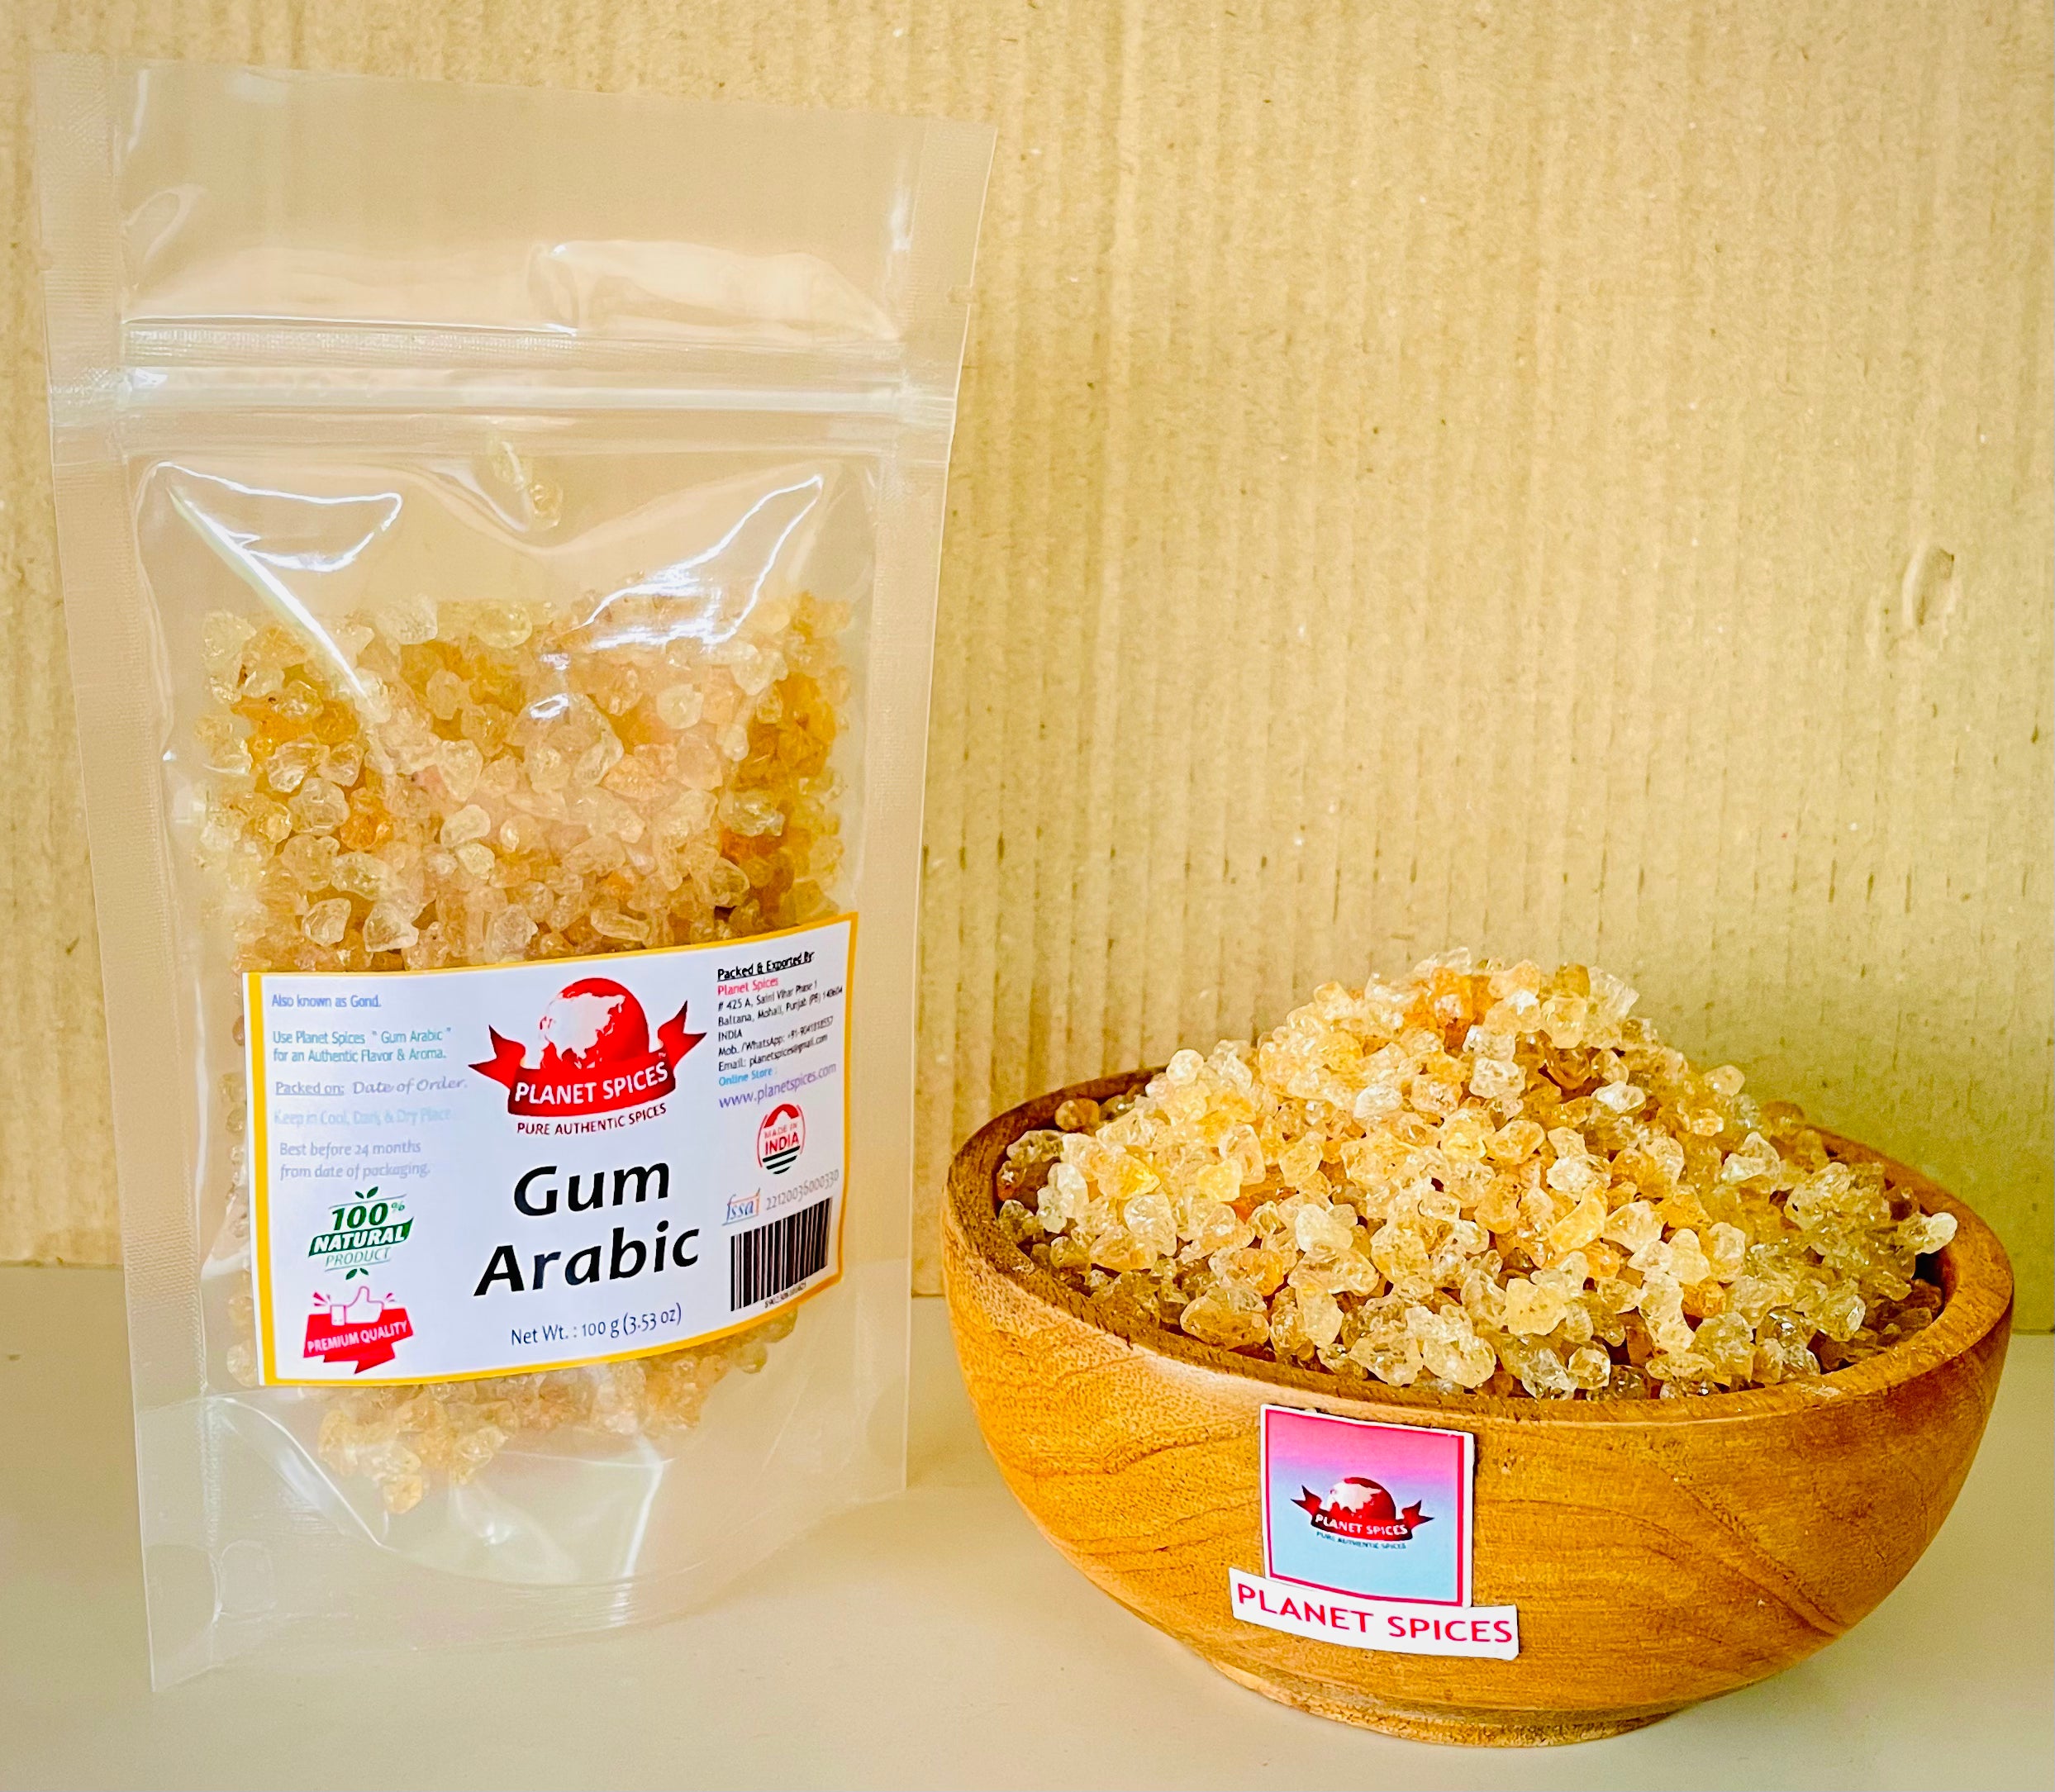 Buy Gum Arabic Online - Gond - Acacia